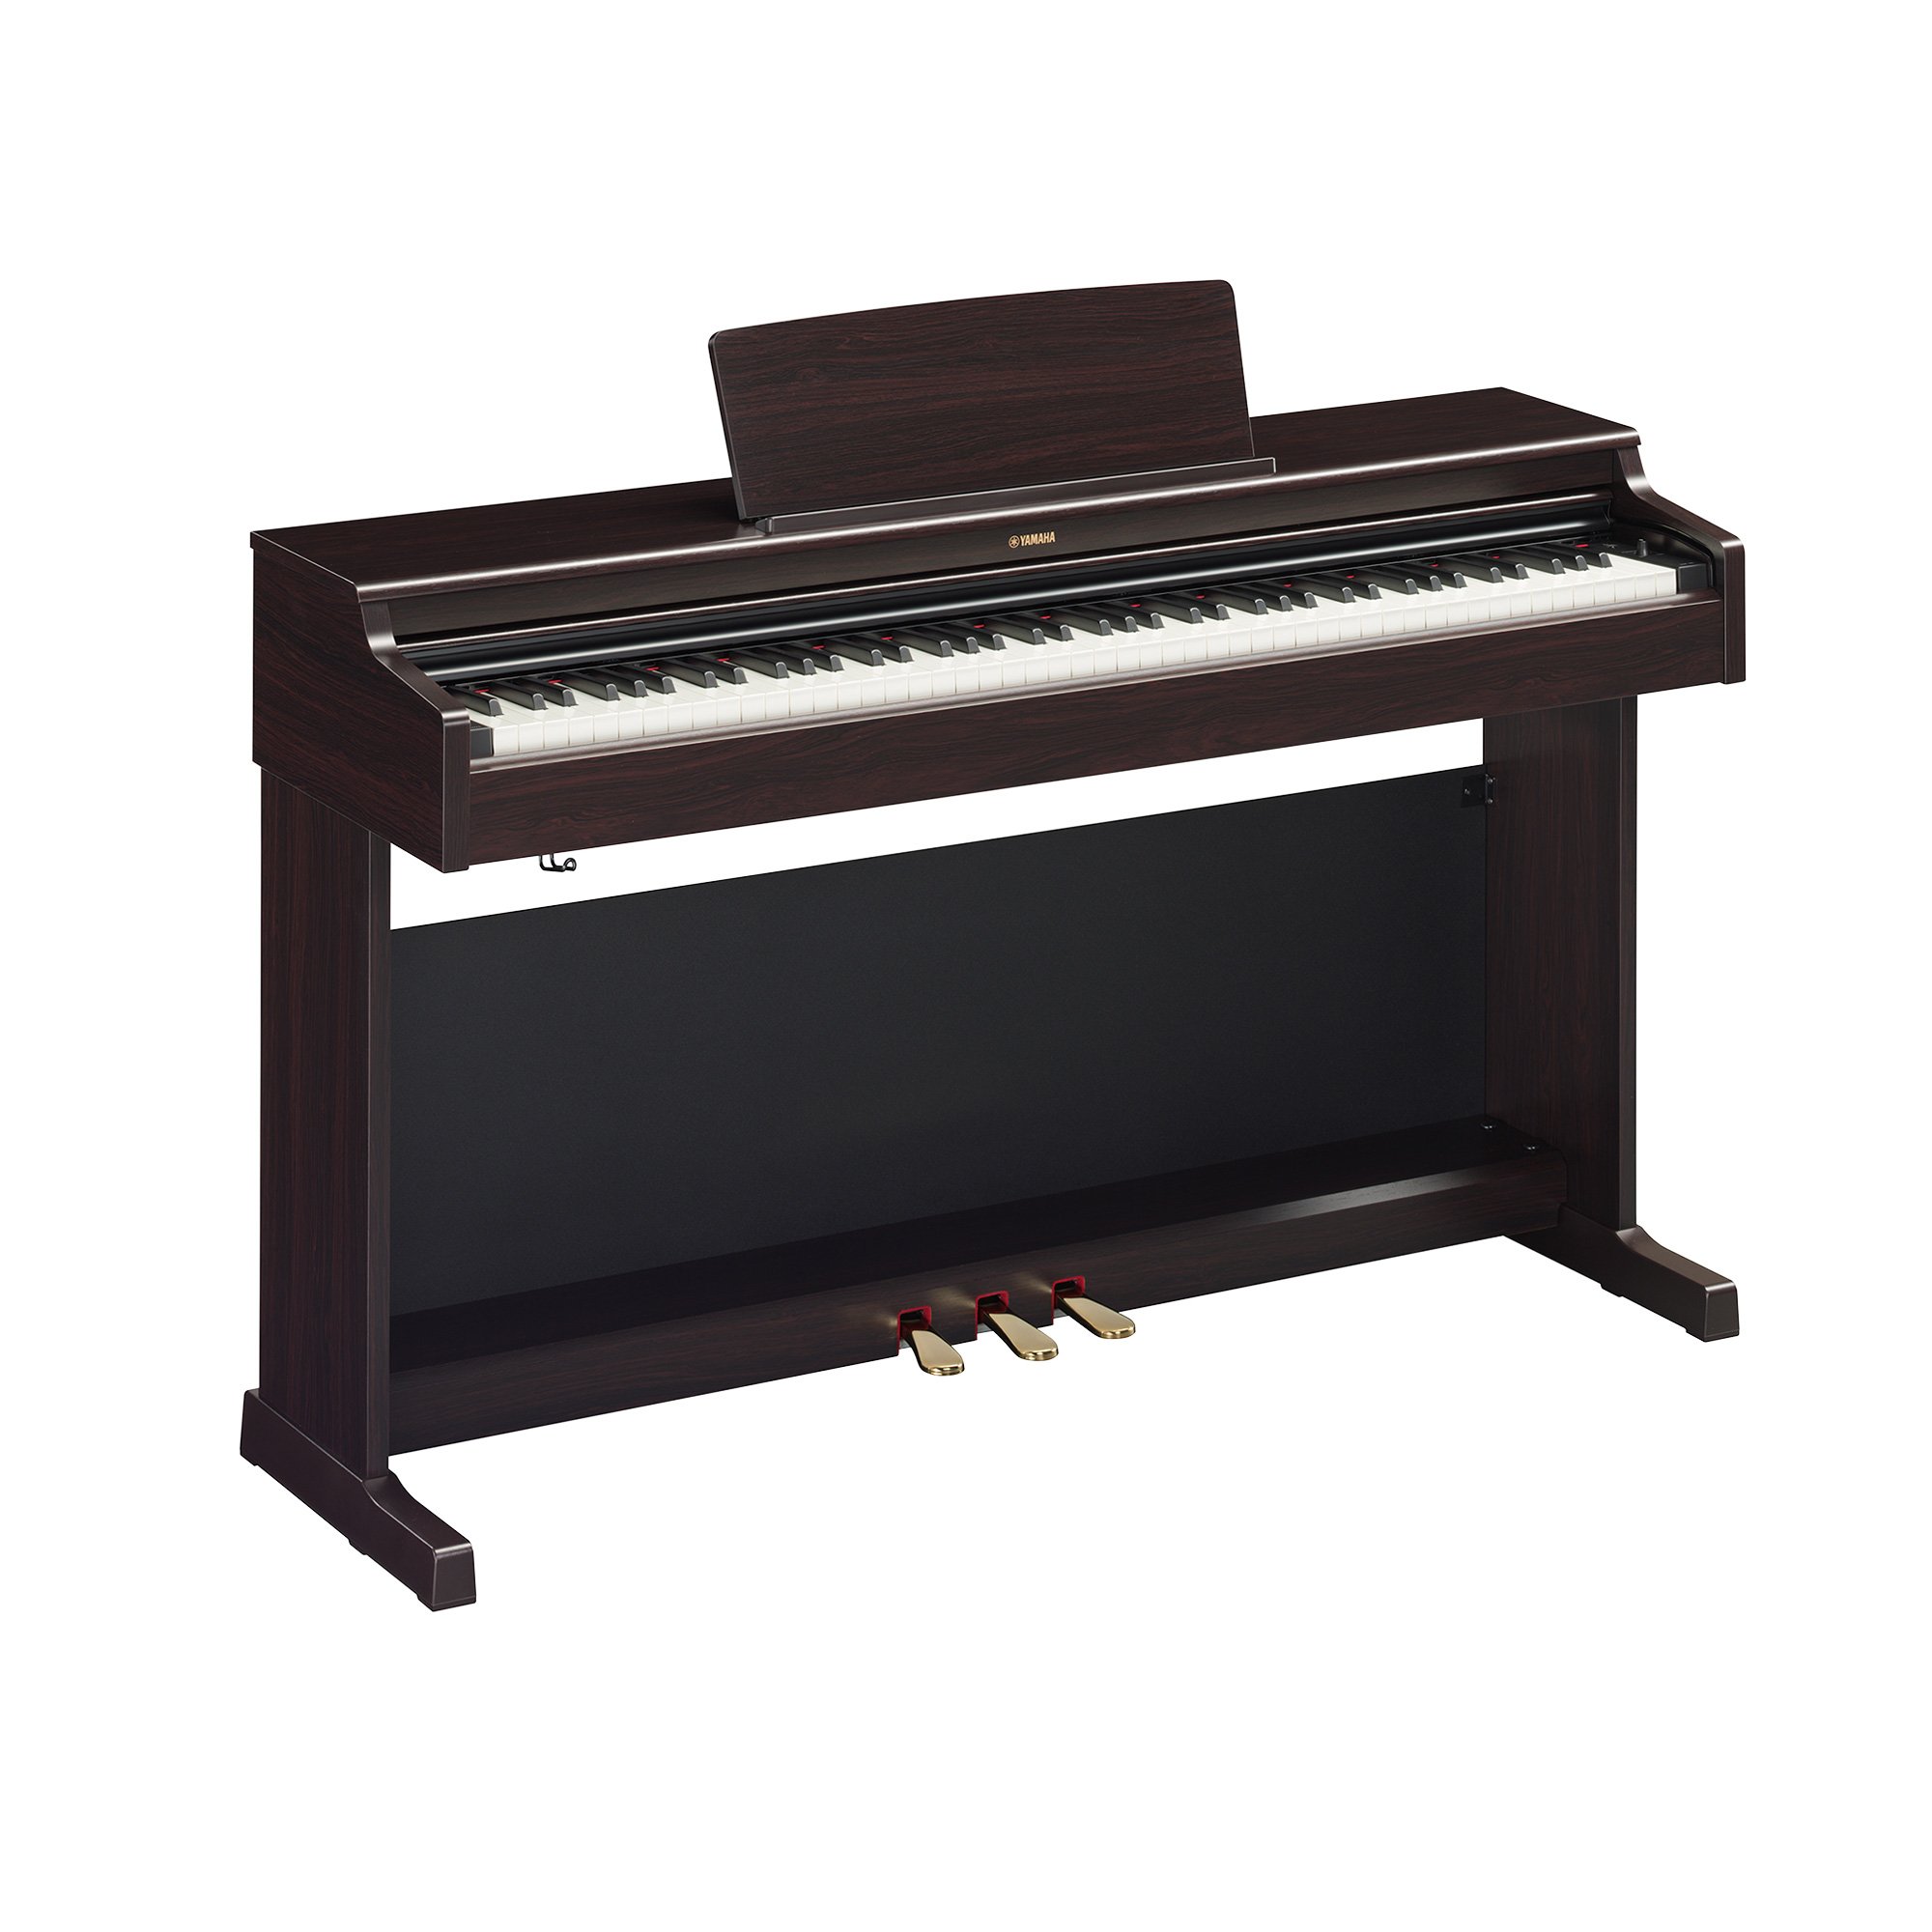 雅马哈数码钢琴 YDP-165B